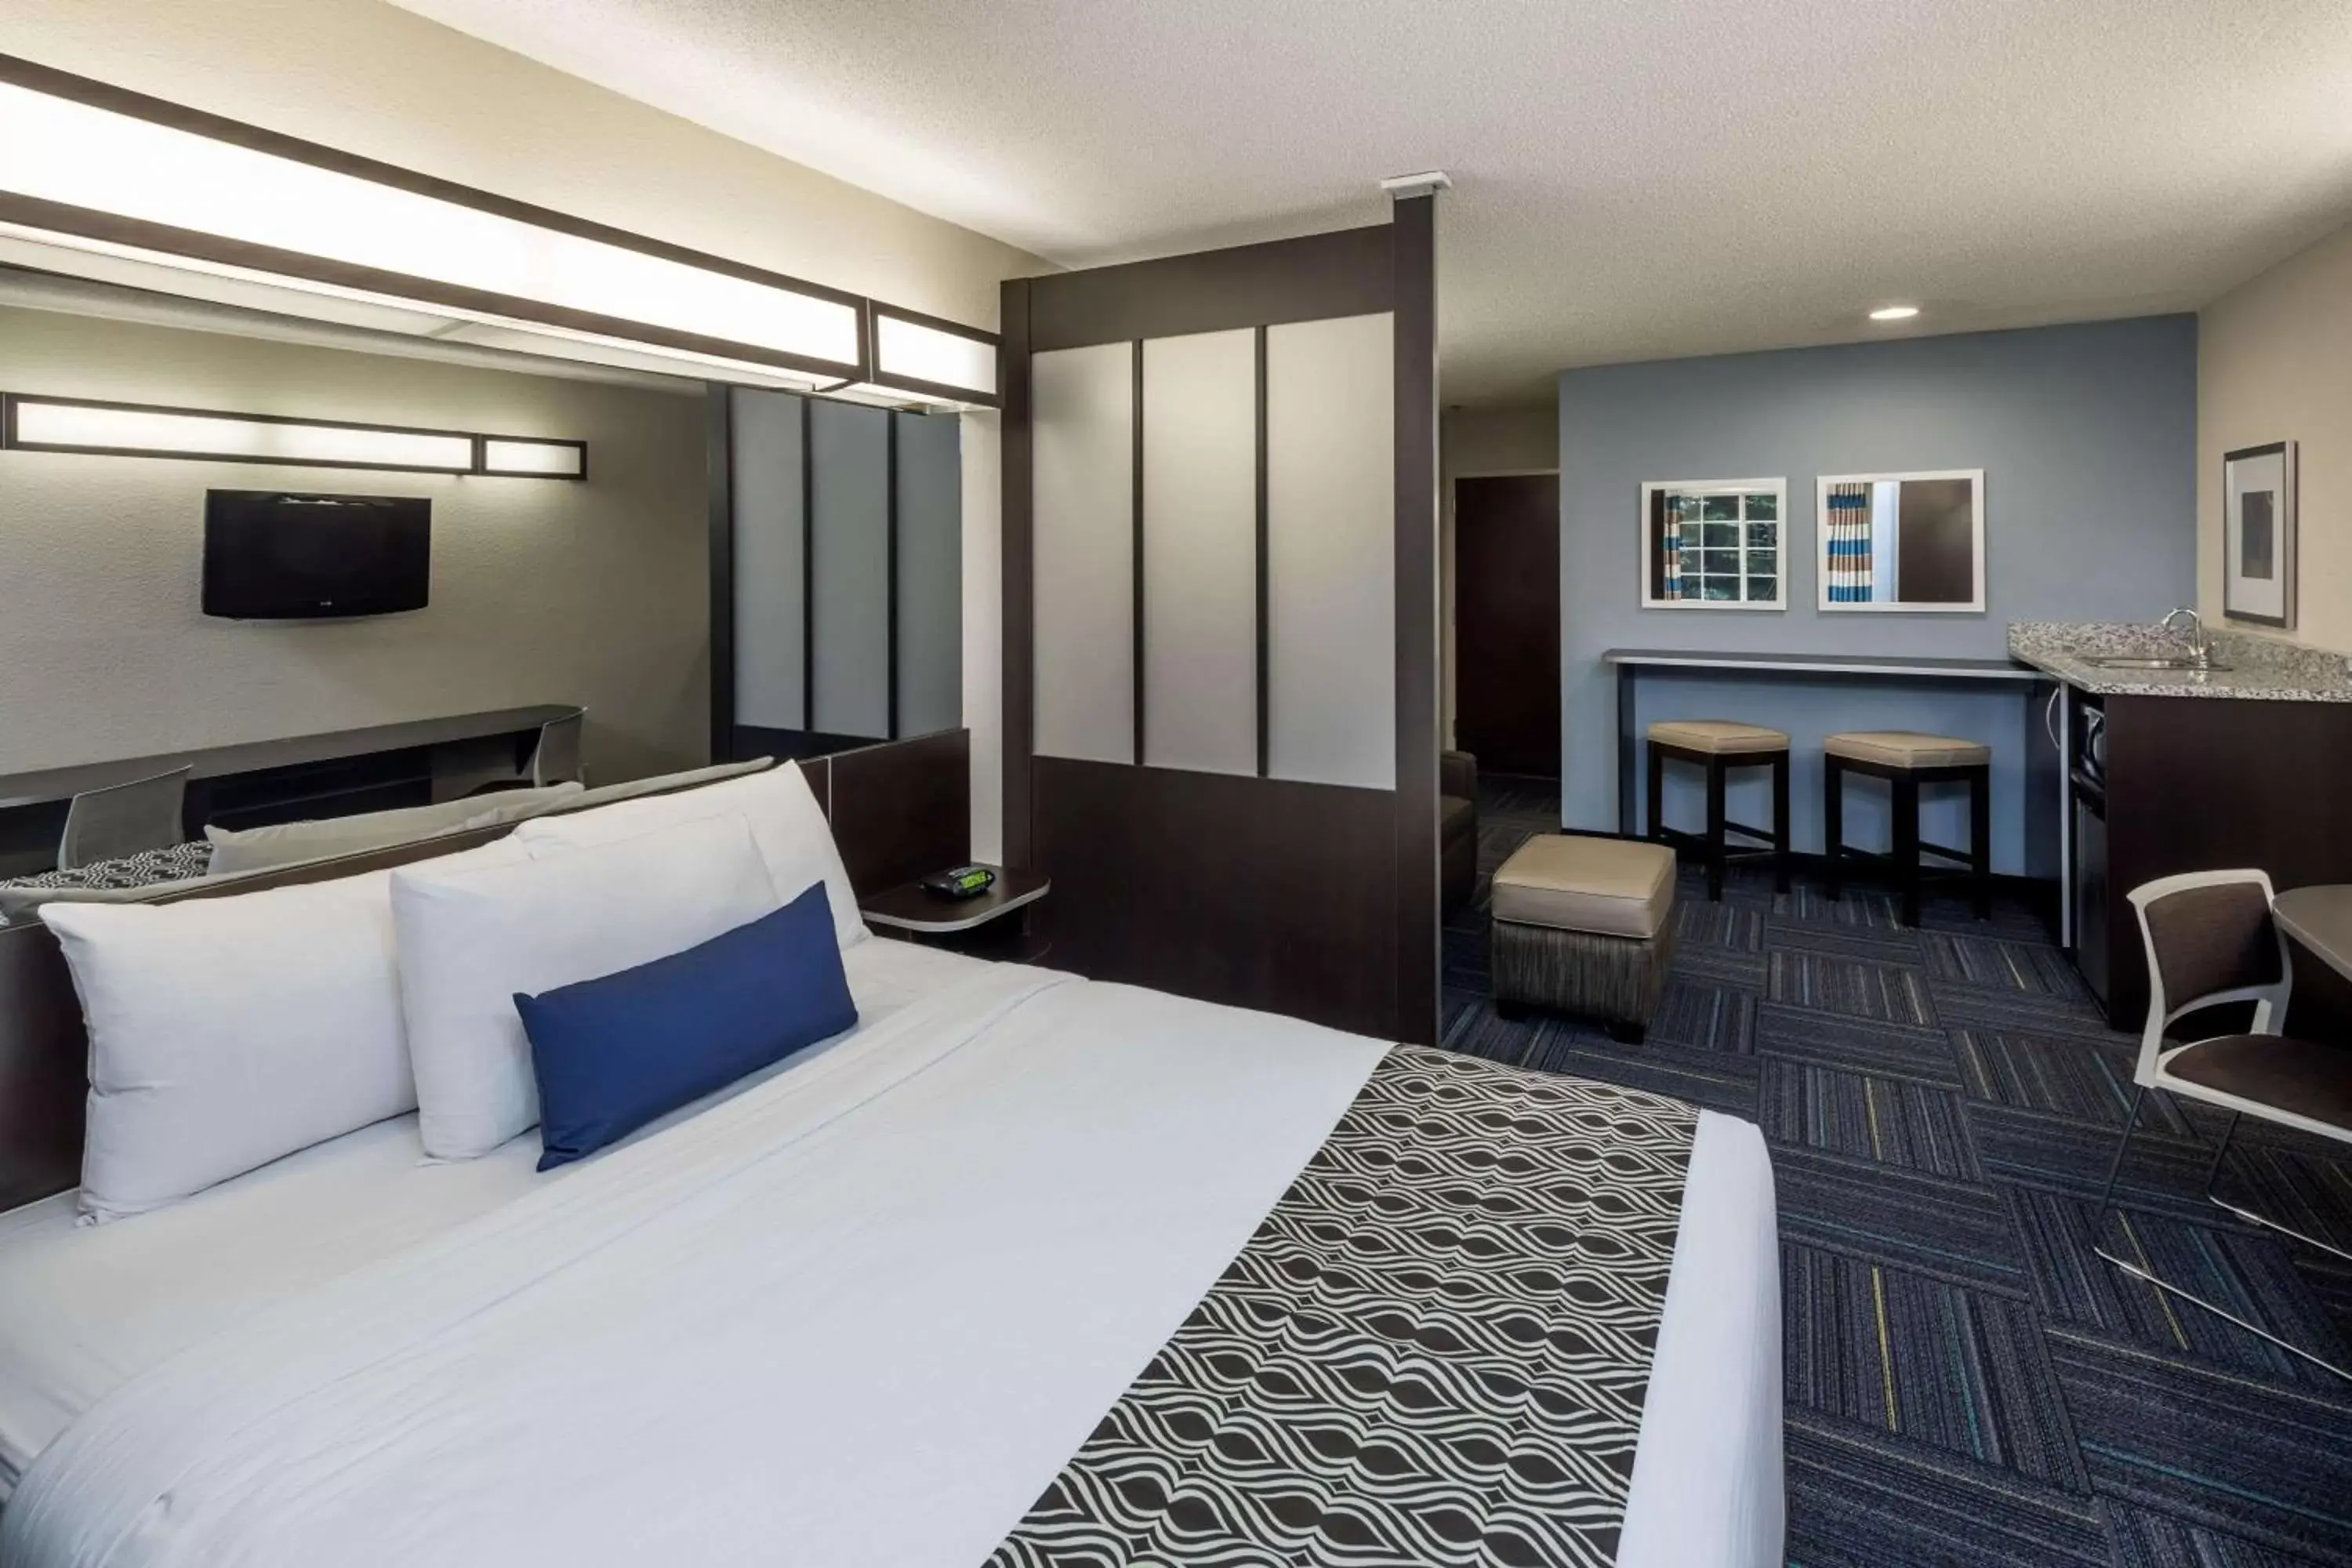 Bedroom in Microtel Inn & Suites - Greenville